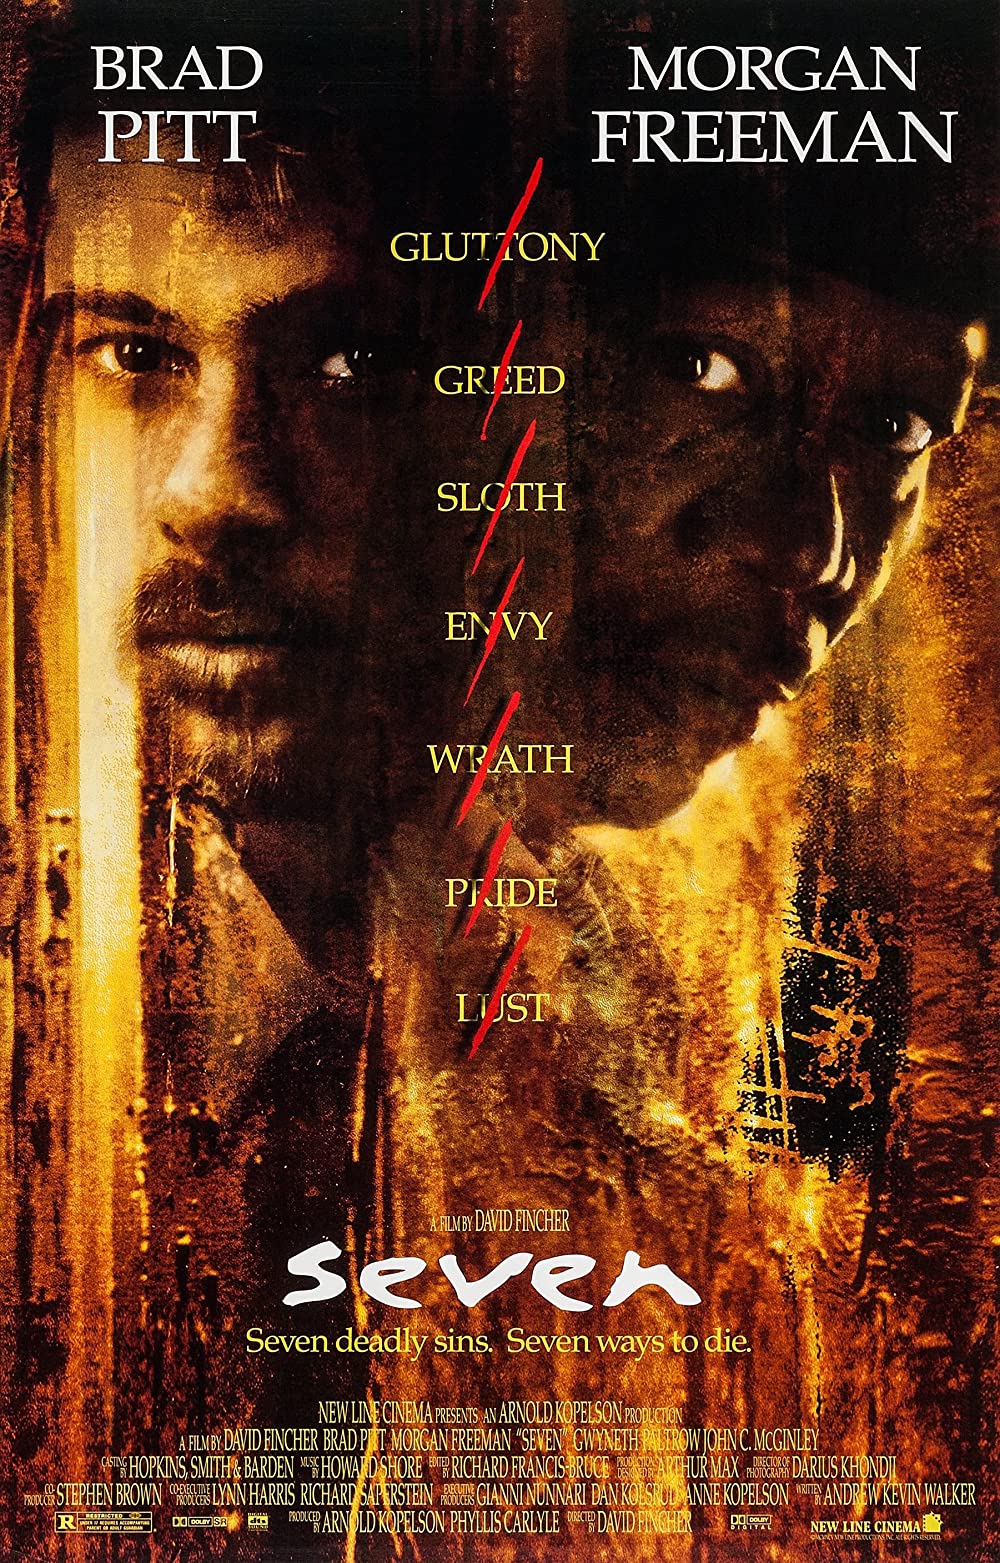 ดูหนังออนไลน์ฟรี Seven (1995) เซเว่น เจ็ดข้อต้องฆ่า [ซับไทย]